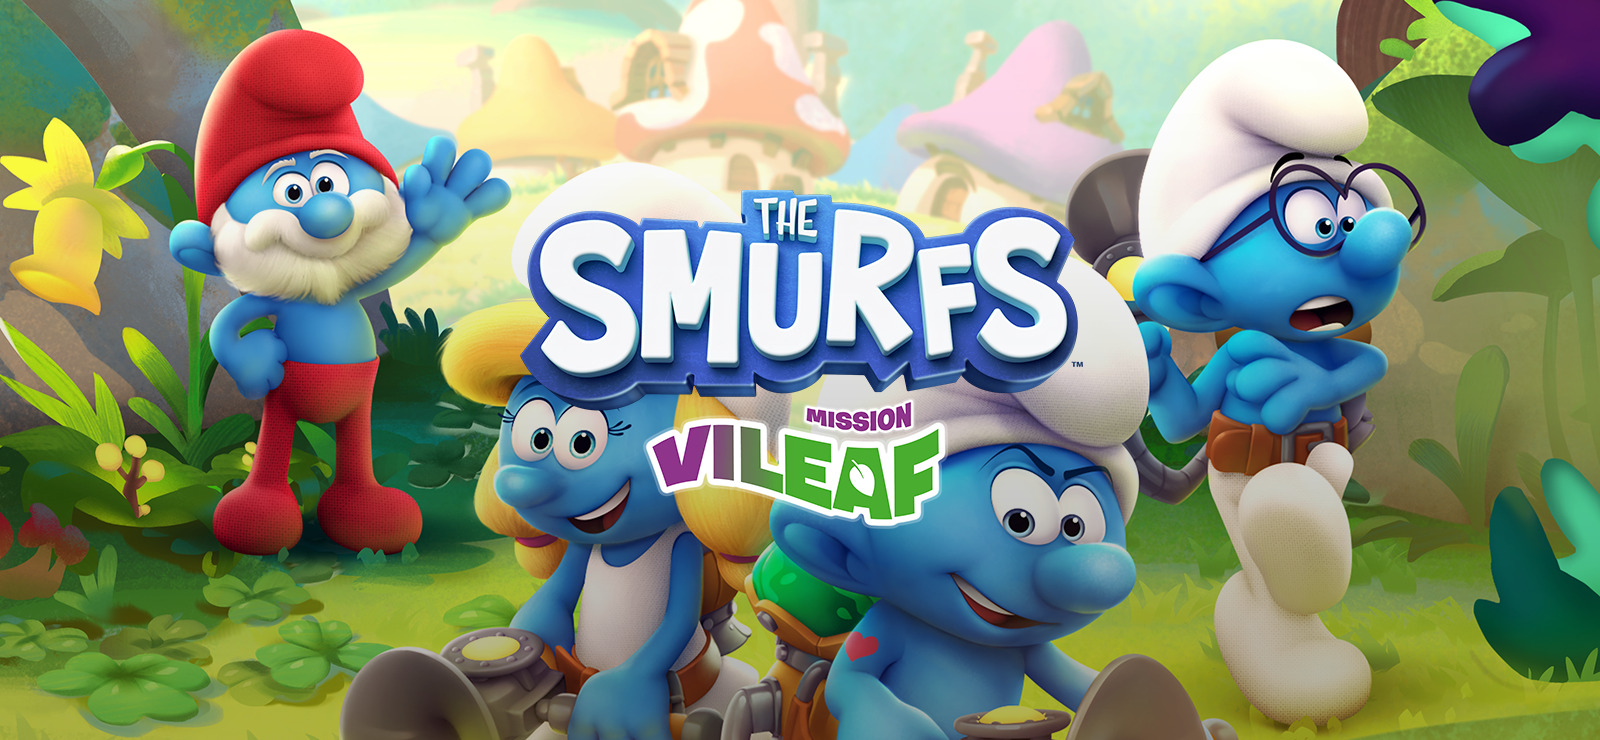 Smurfs' Village' game smurfs next month